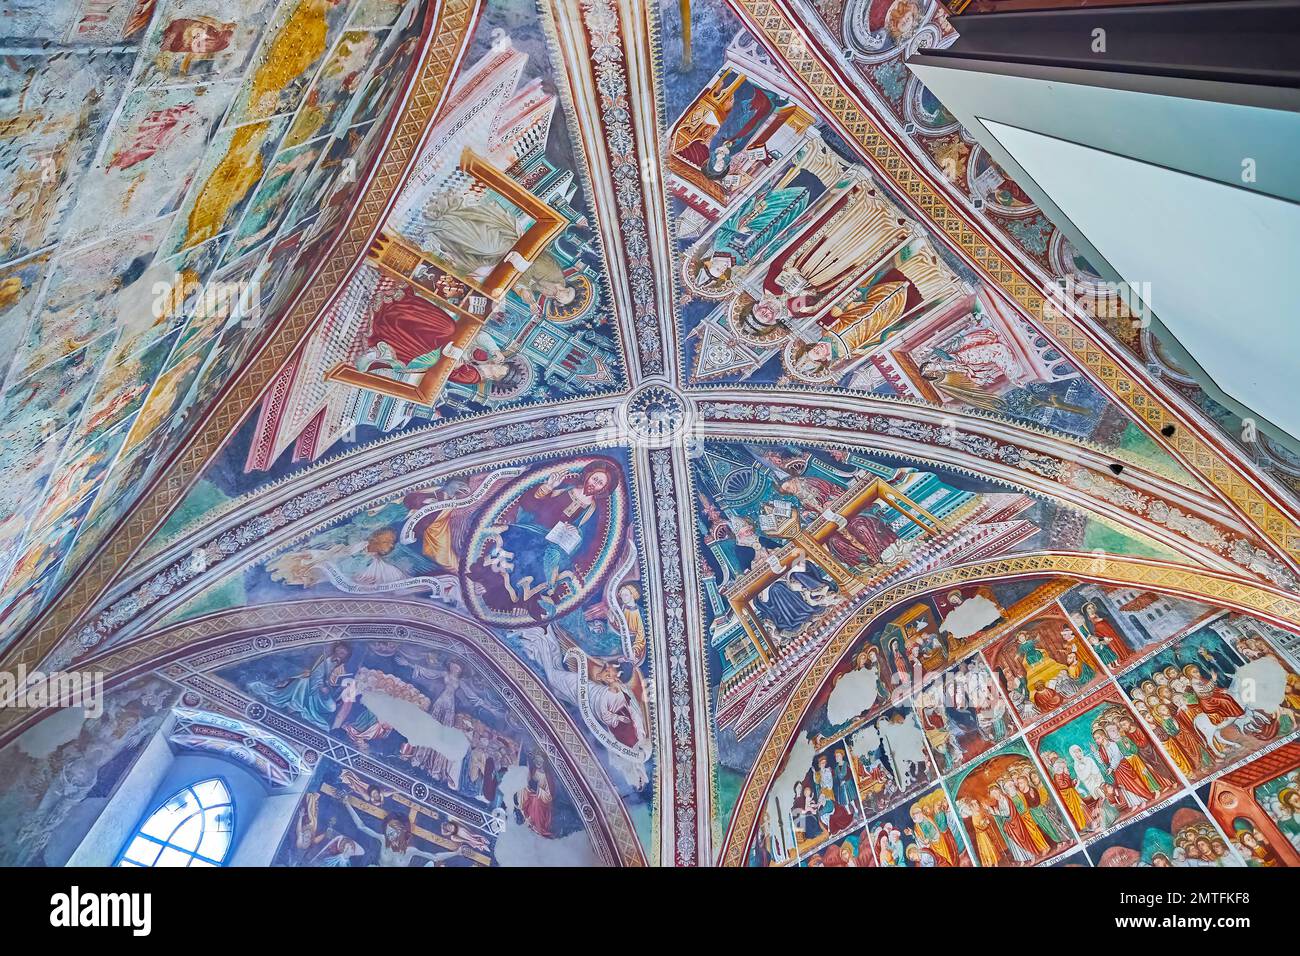 ASCONA, SUIZA - 28 DE MARZO de 2022: Los frescos de colores en la cúpula interior de la iglesia de Santa María de la Misericordia, el 28 de marzo en Ascona Foto de stock